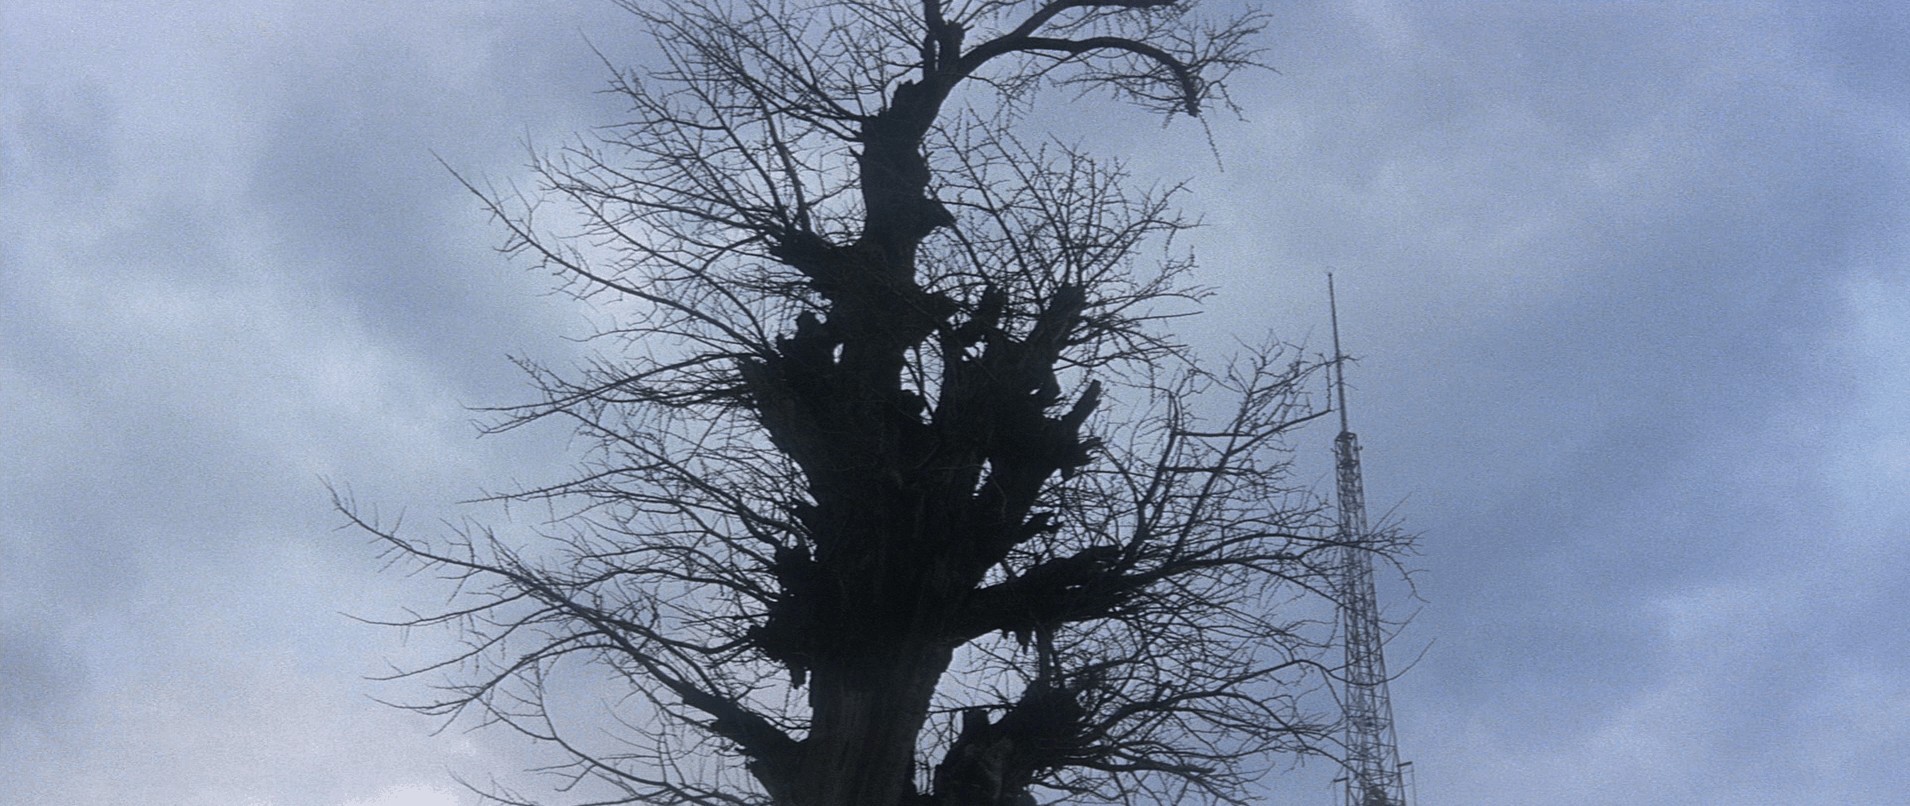 Screen cap of a tree from Tokyo Drifter